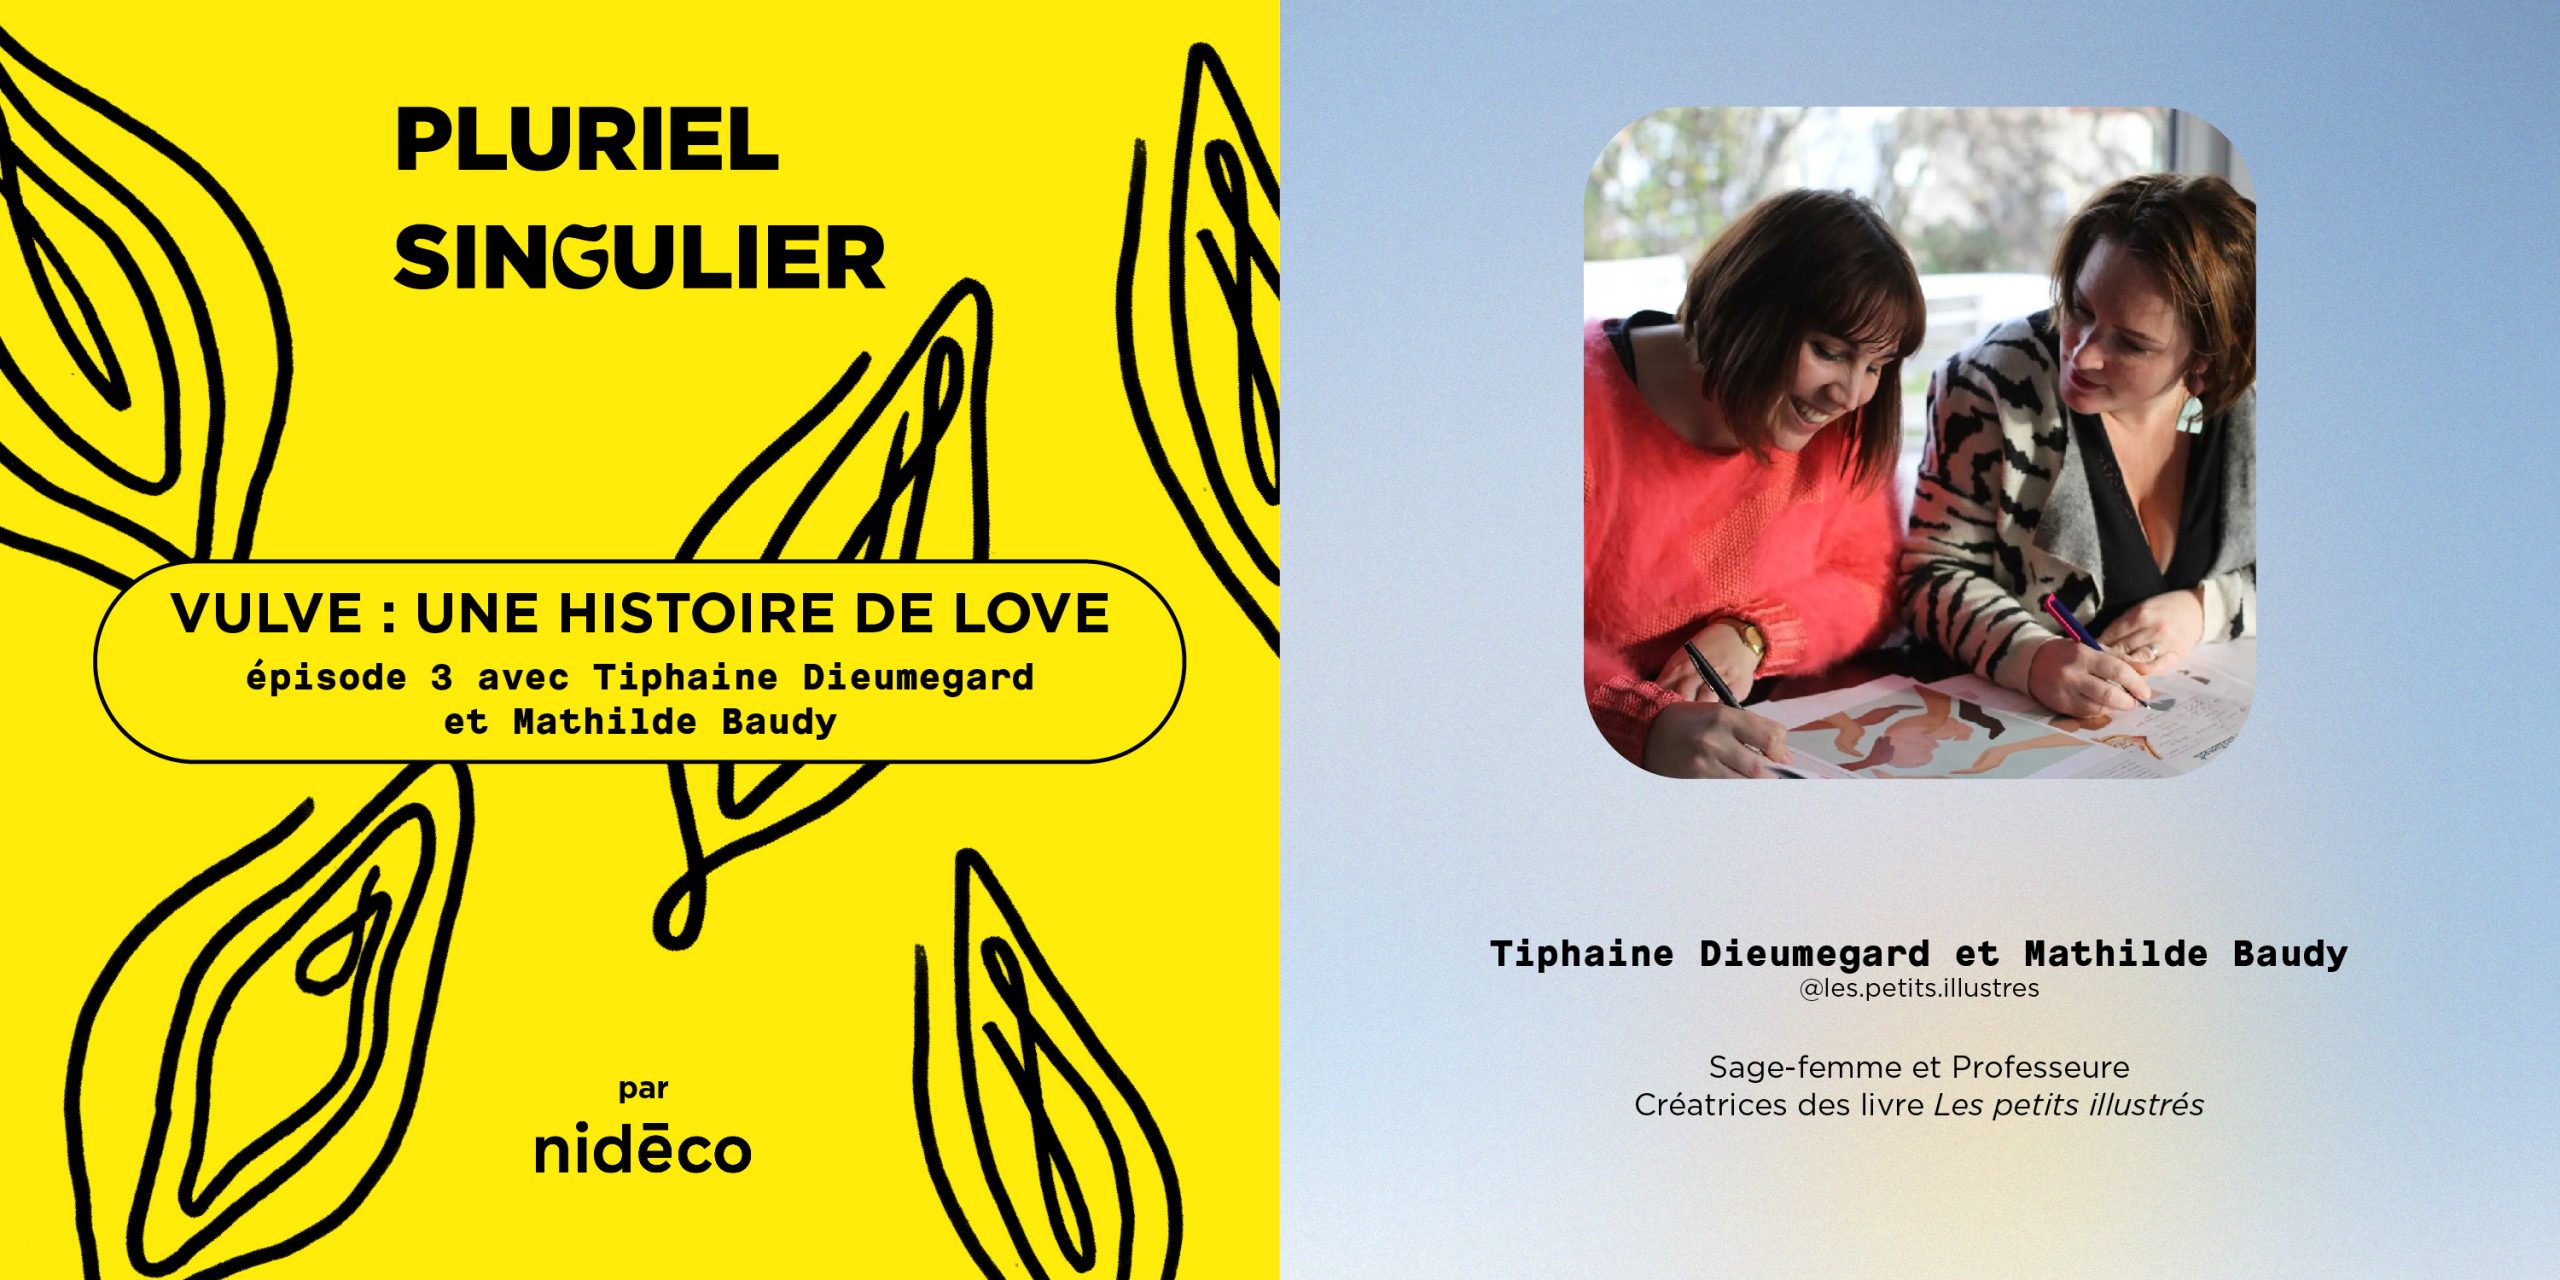 Nidéco podcast Pluriel Singulier Vulve Tiphaine Dieumegard et Mathilde Baudy